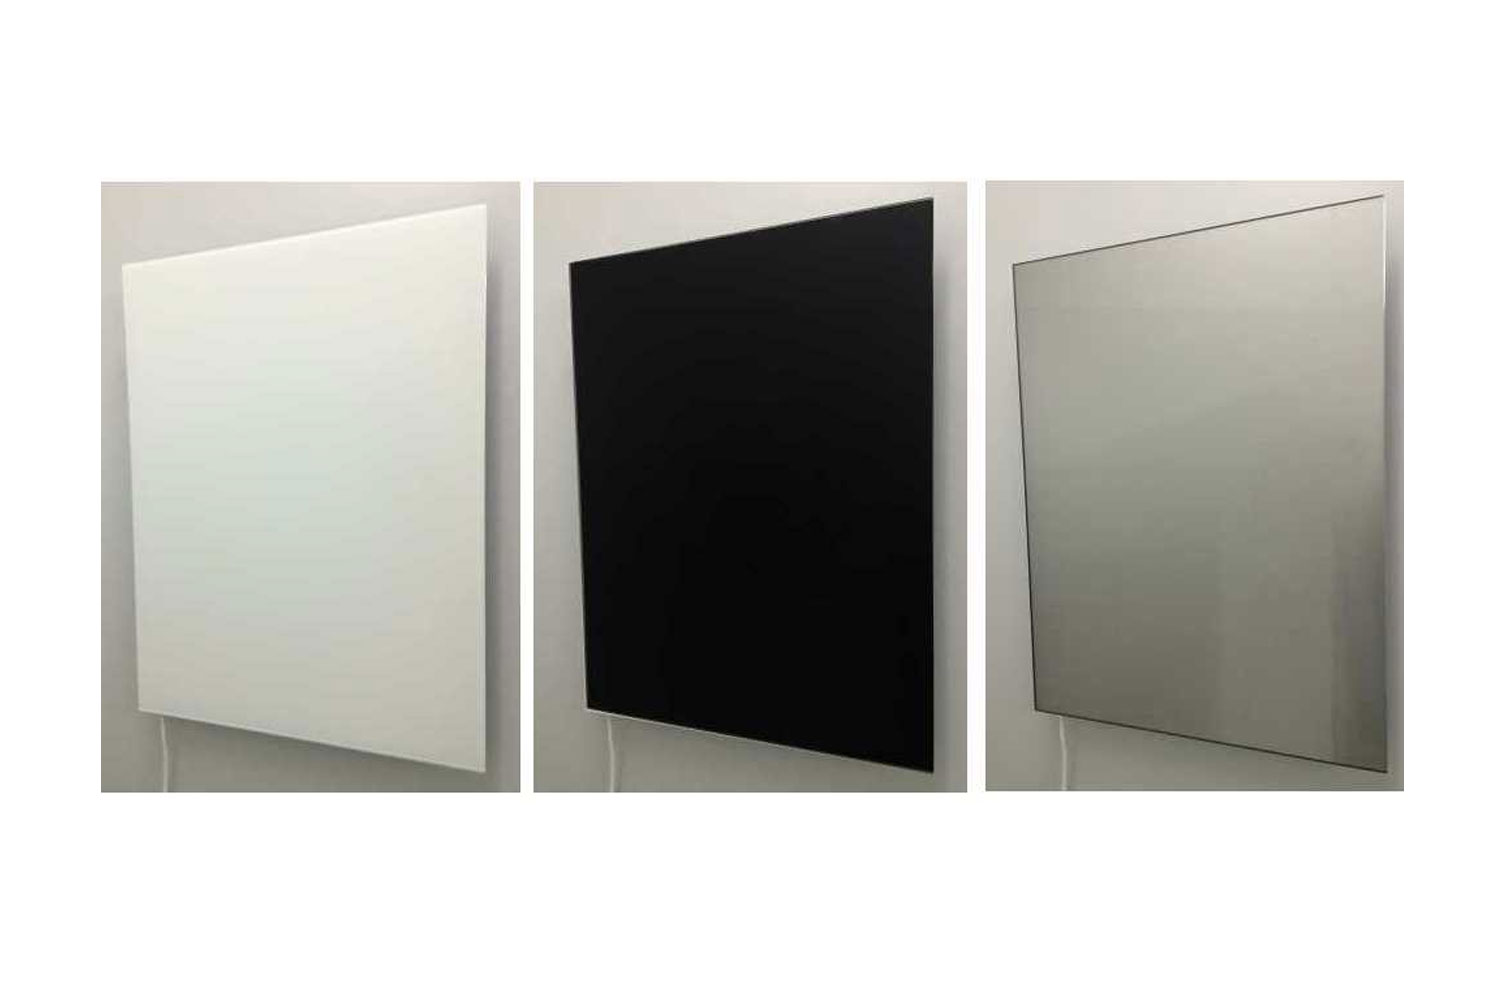 Infrarot Heizkörper 60x120cm, Farbe weiß, schwarz oder als Spiegel, Front aus Sicherheitsglas - sehr edles Design